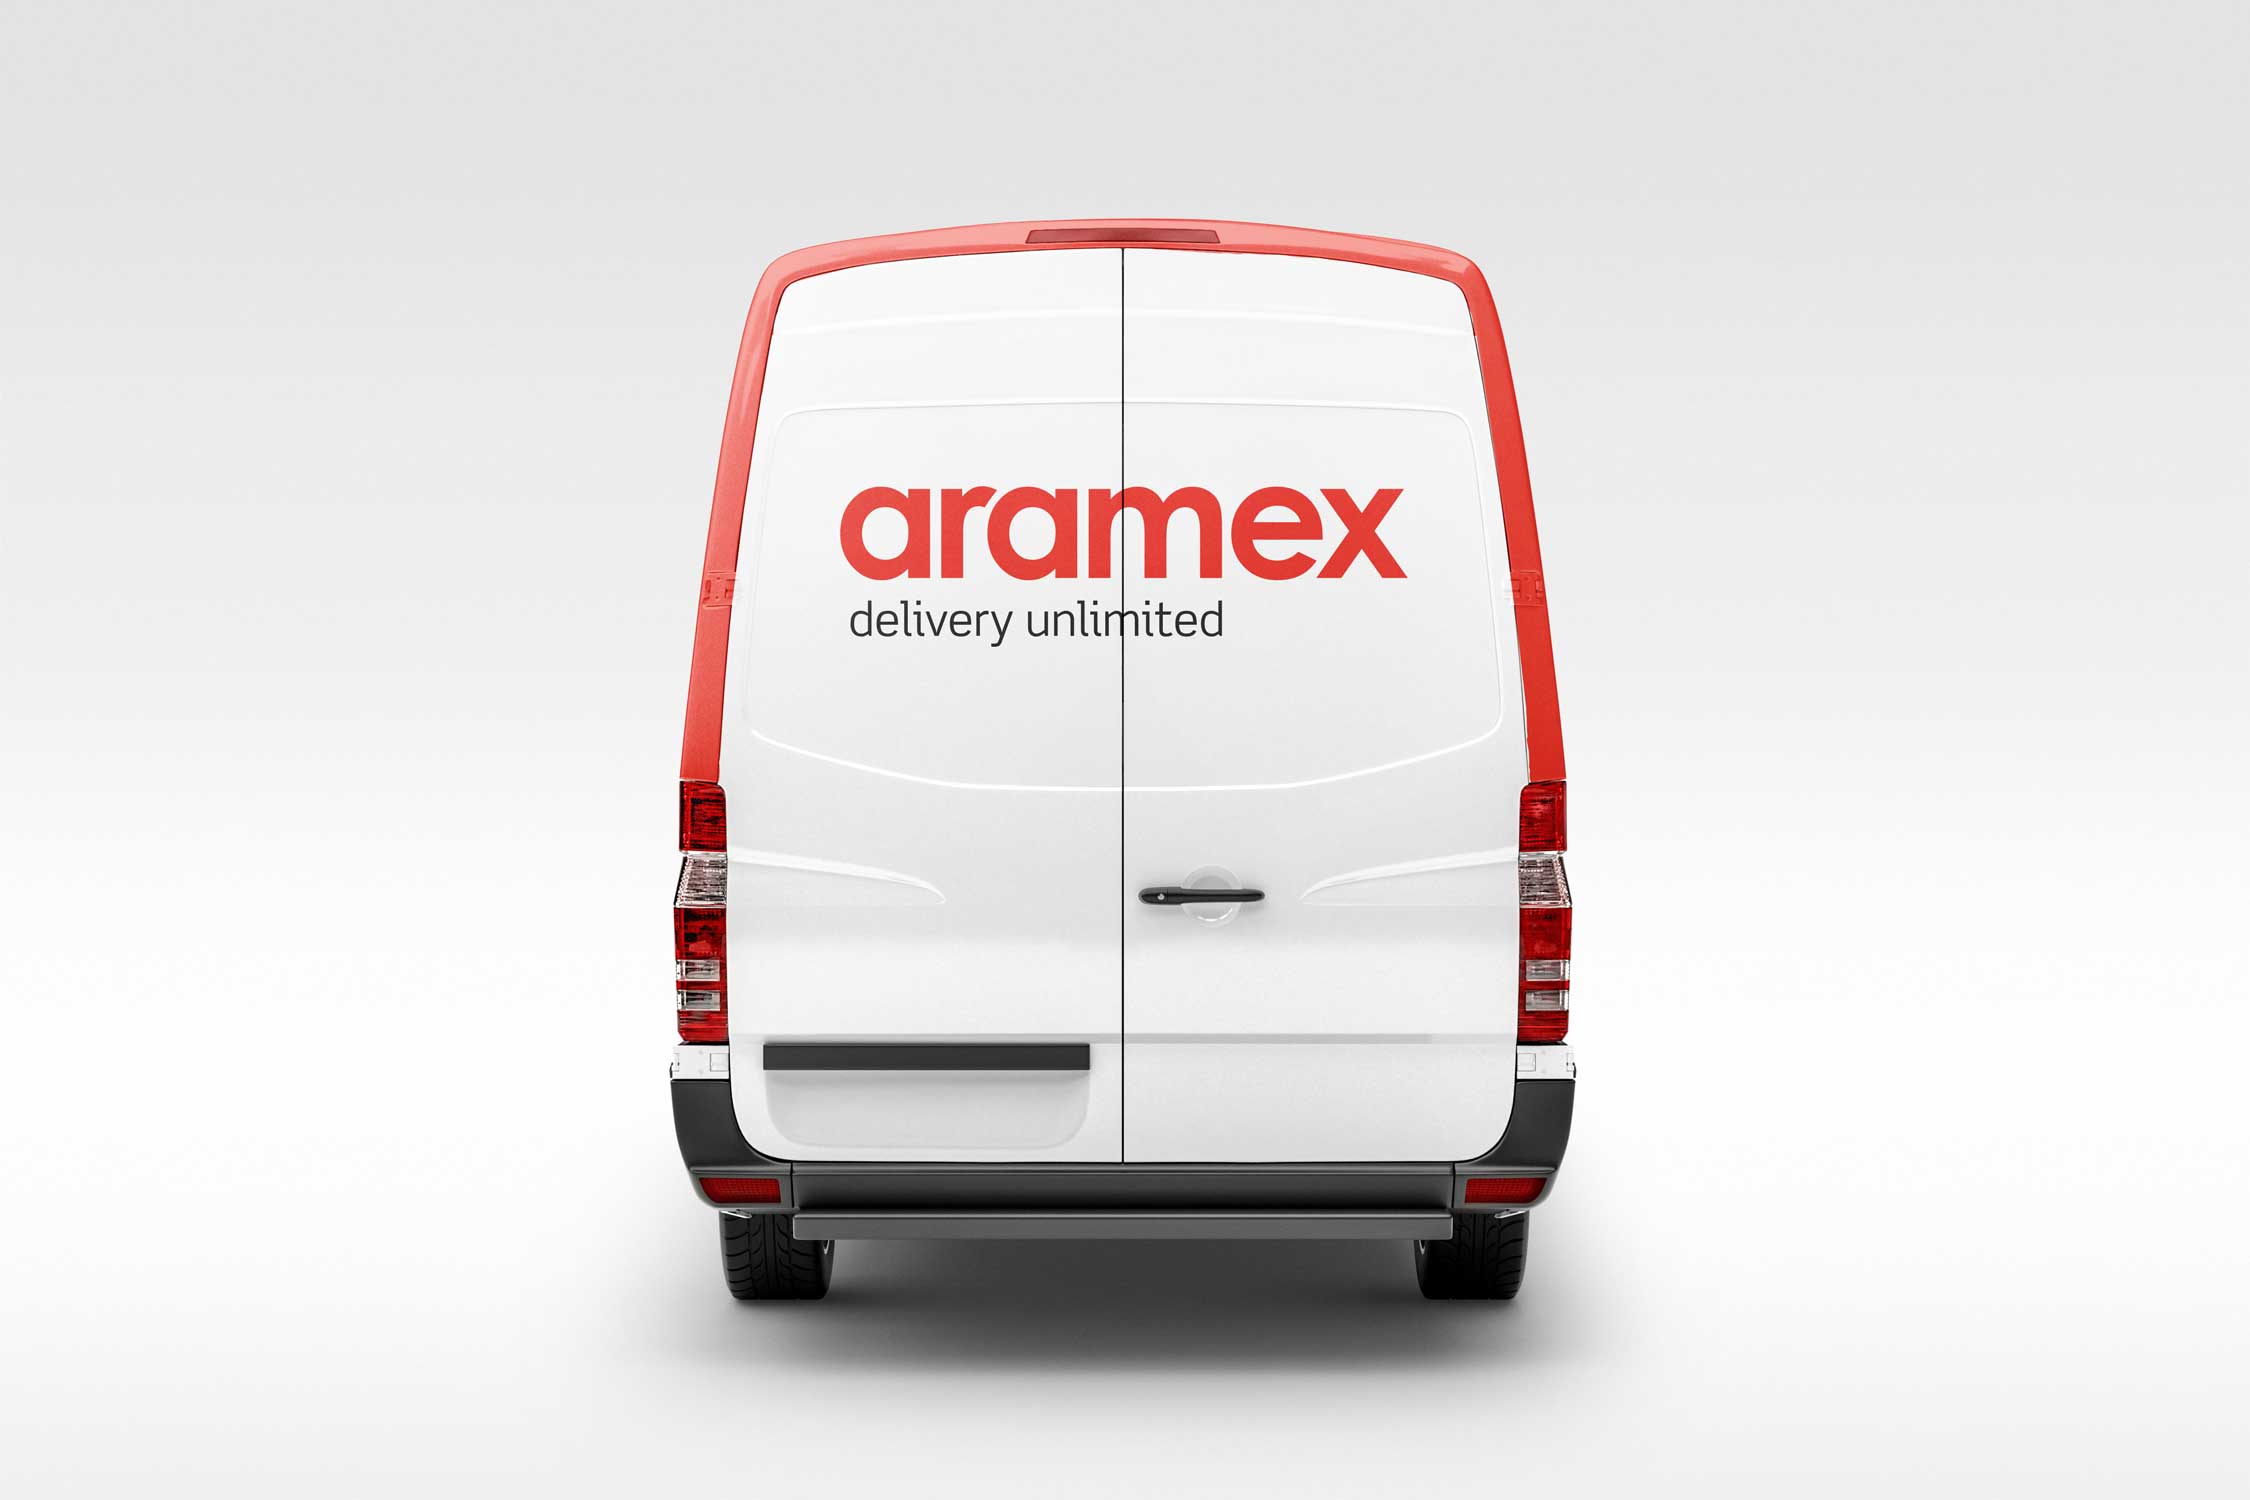 Aramex: Vehicle Signage Concept 1 Back